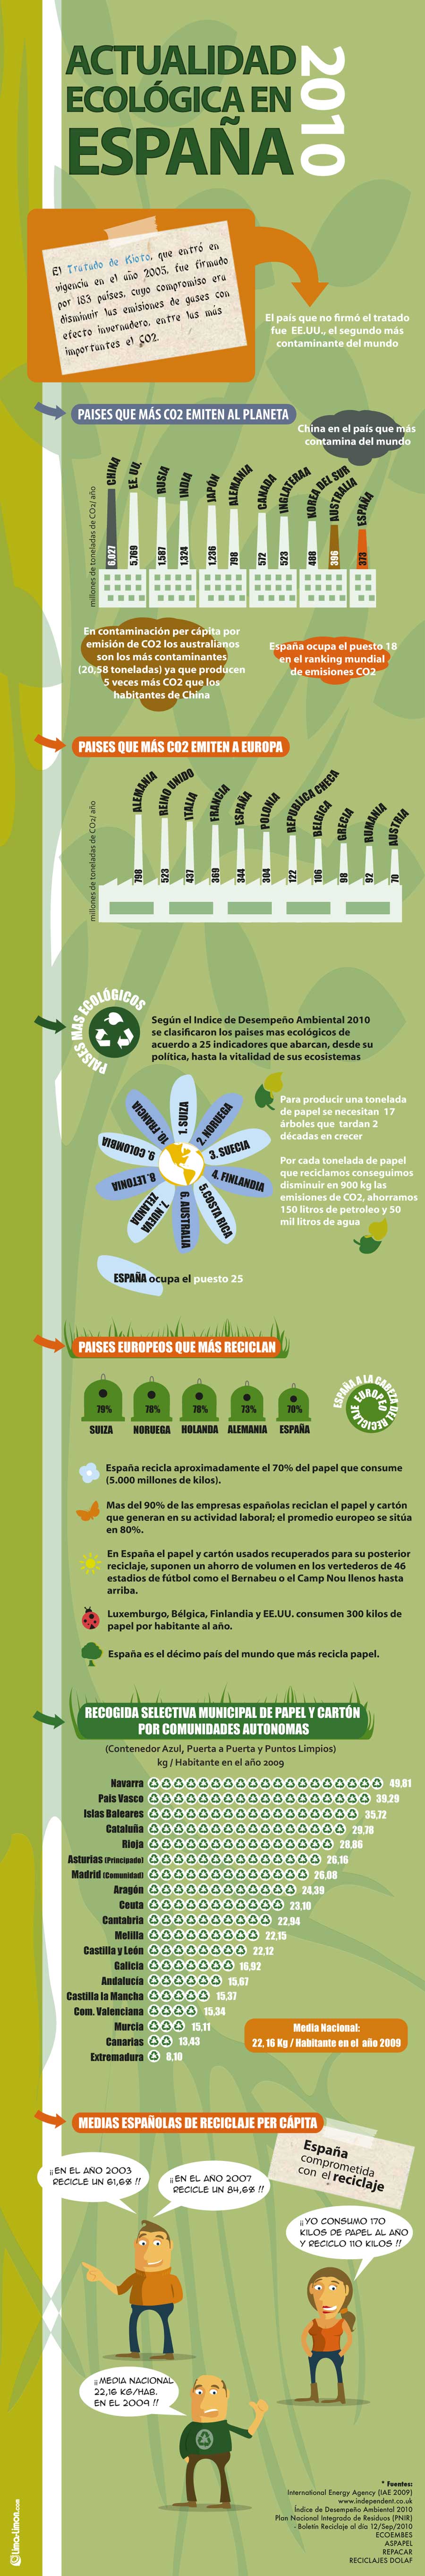 Ecologia y reciclaje en España